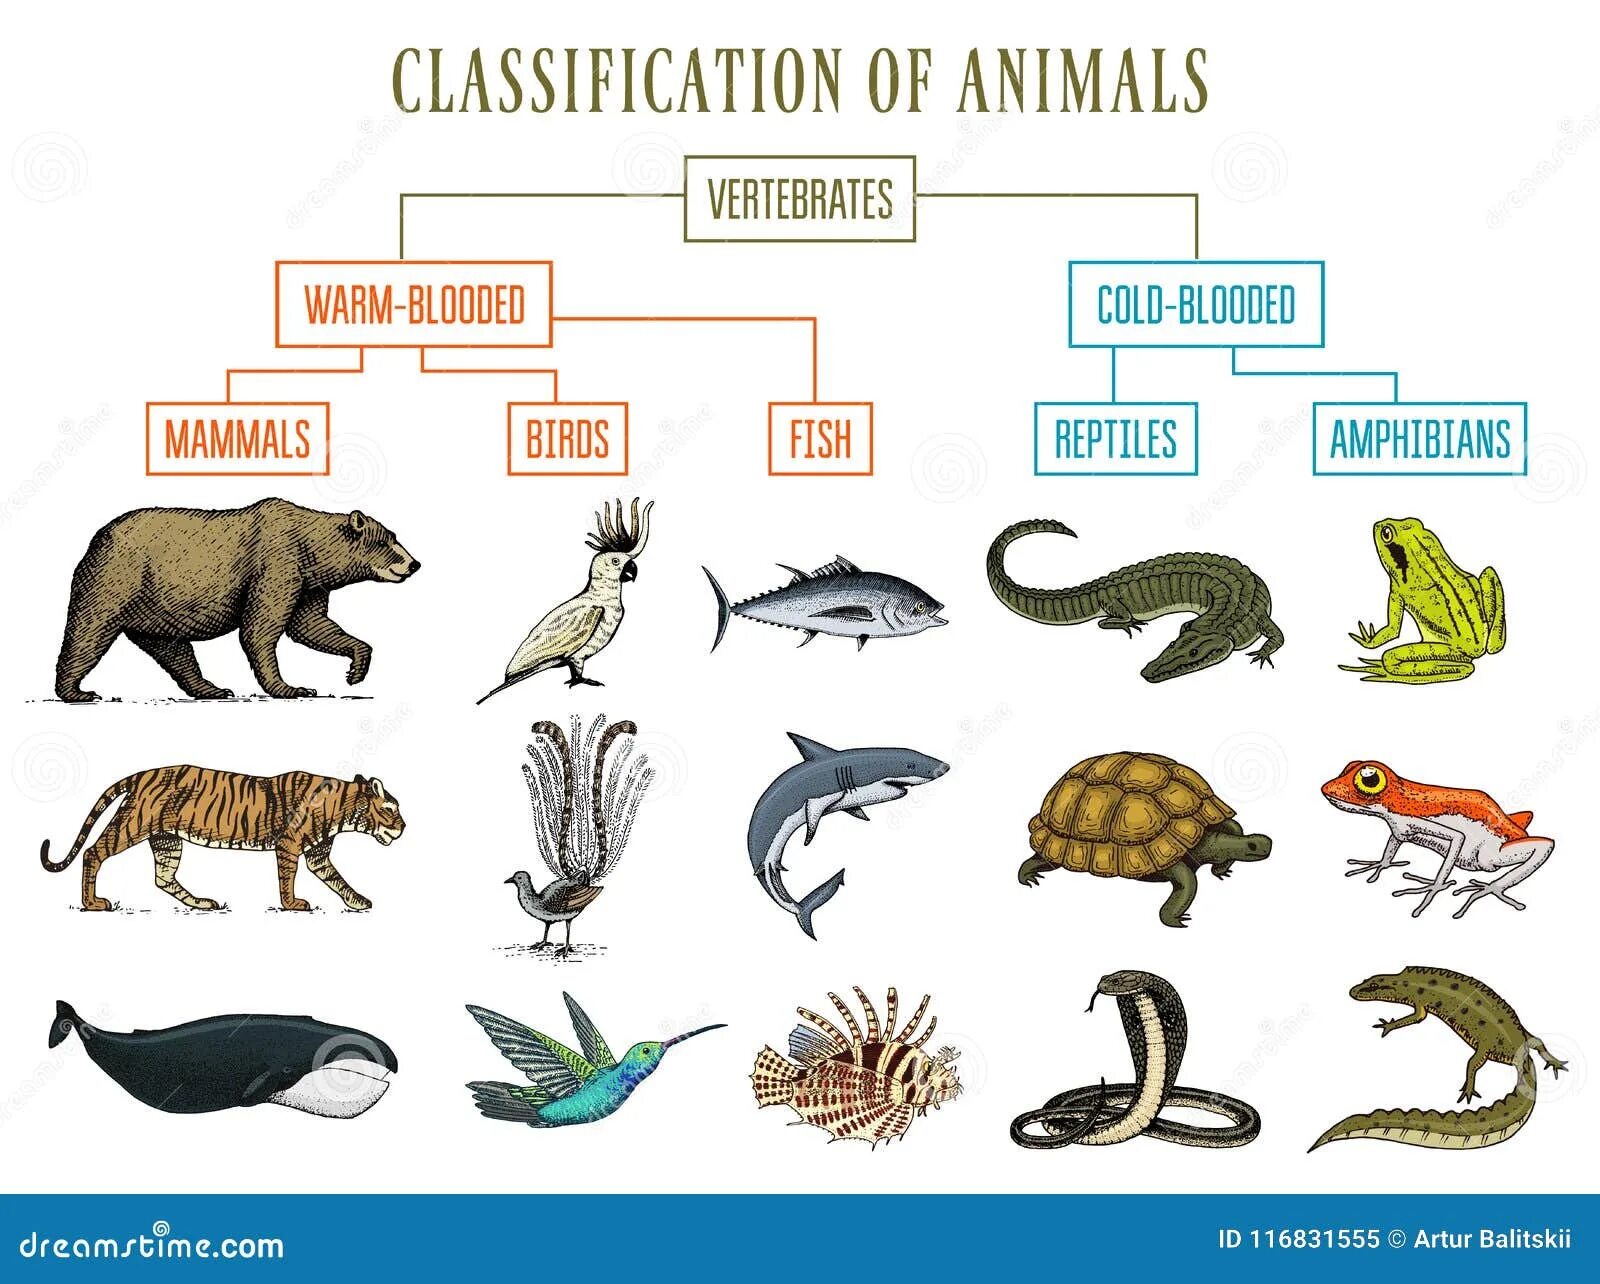 Reptiles mammals. Животные классификация. Классификация пресмыкающихся птиц и млекопитающих. Классификация животных пресмыкающиеся млекопитающие. Позвоночные животные млекопитающие.